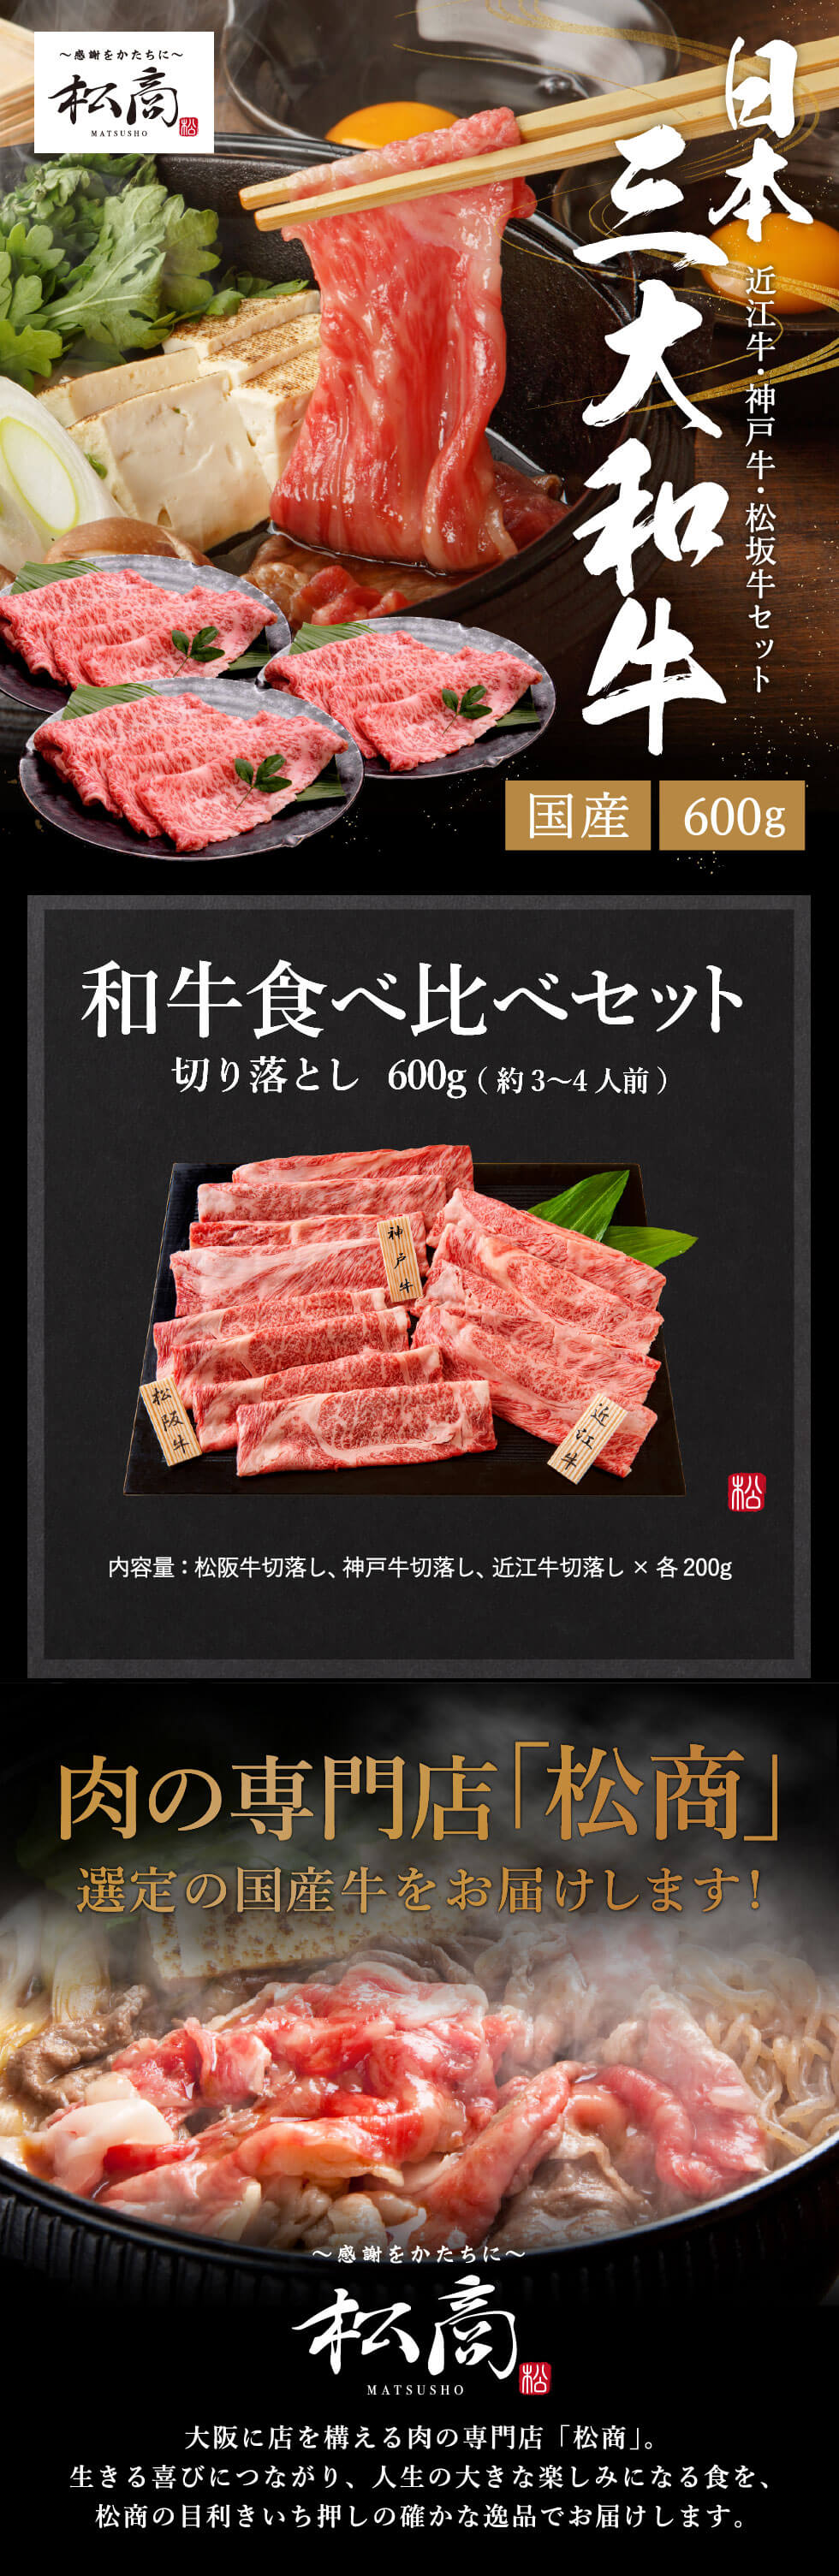 未使用品】 近江牛 商品が選べるギフト券10,000円コースギフト券を産地直送でお届けします